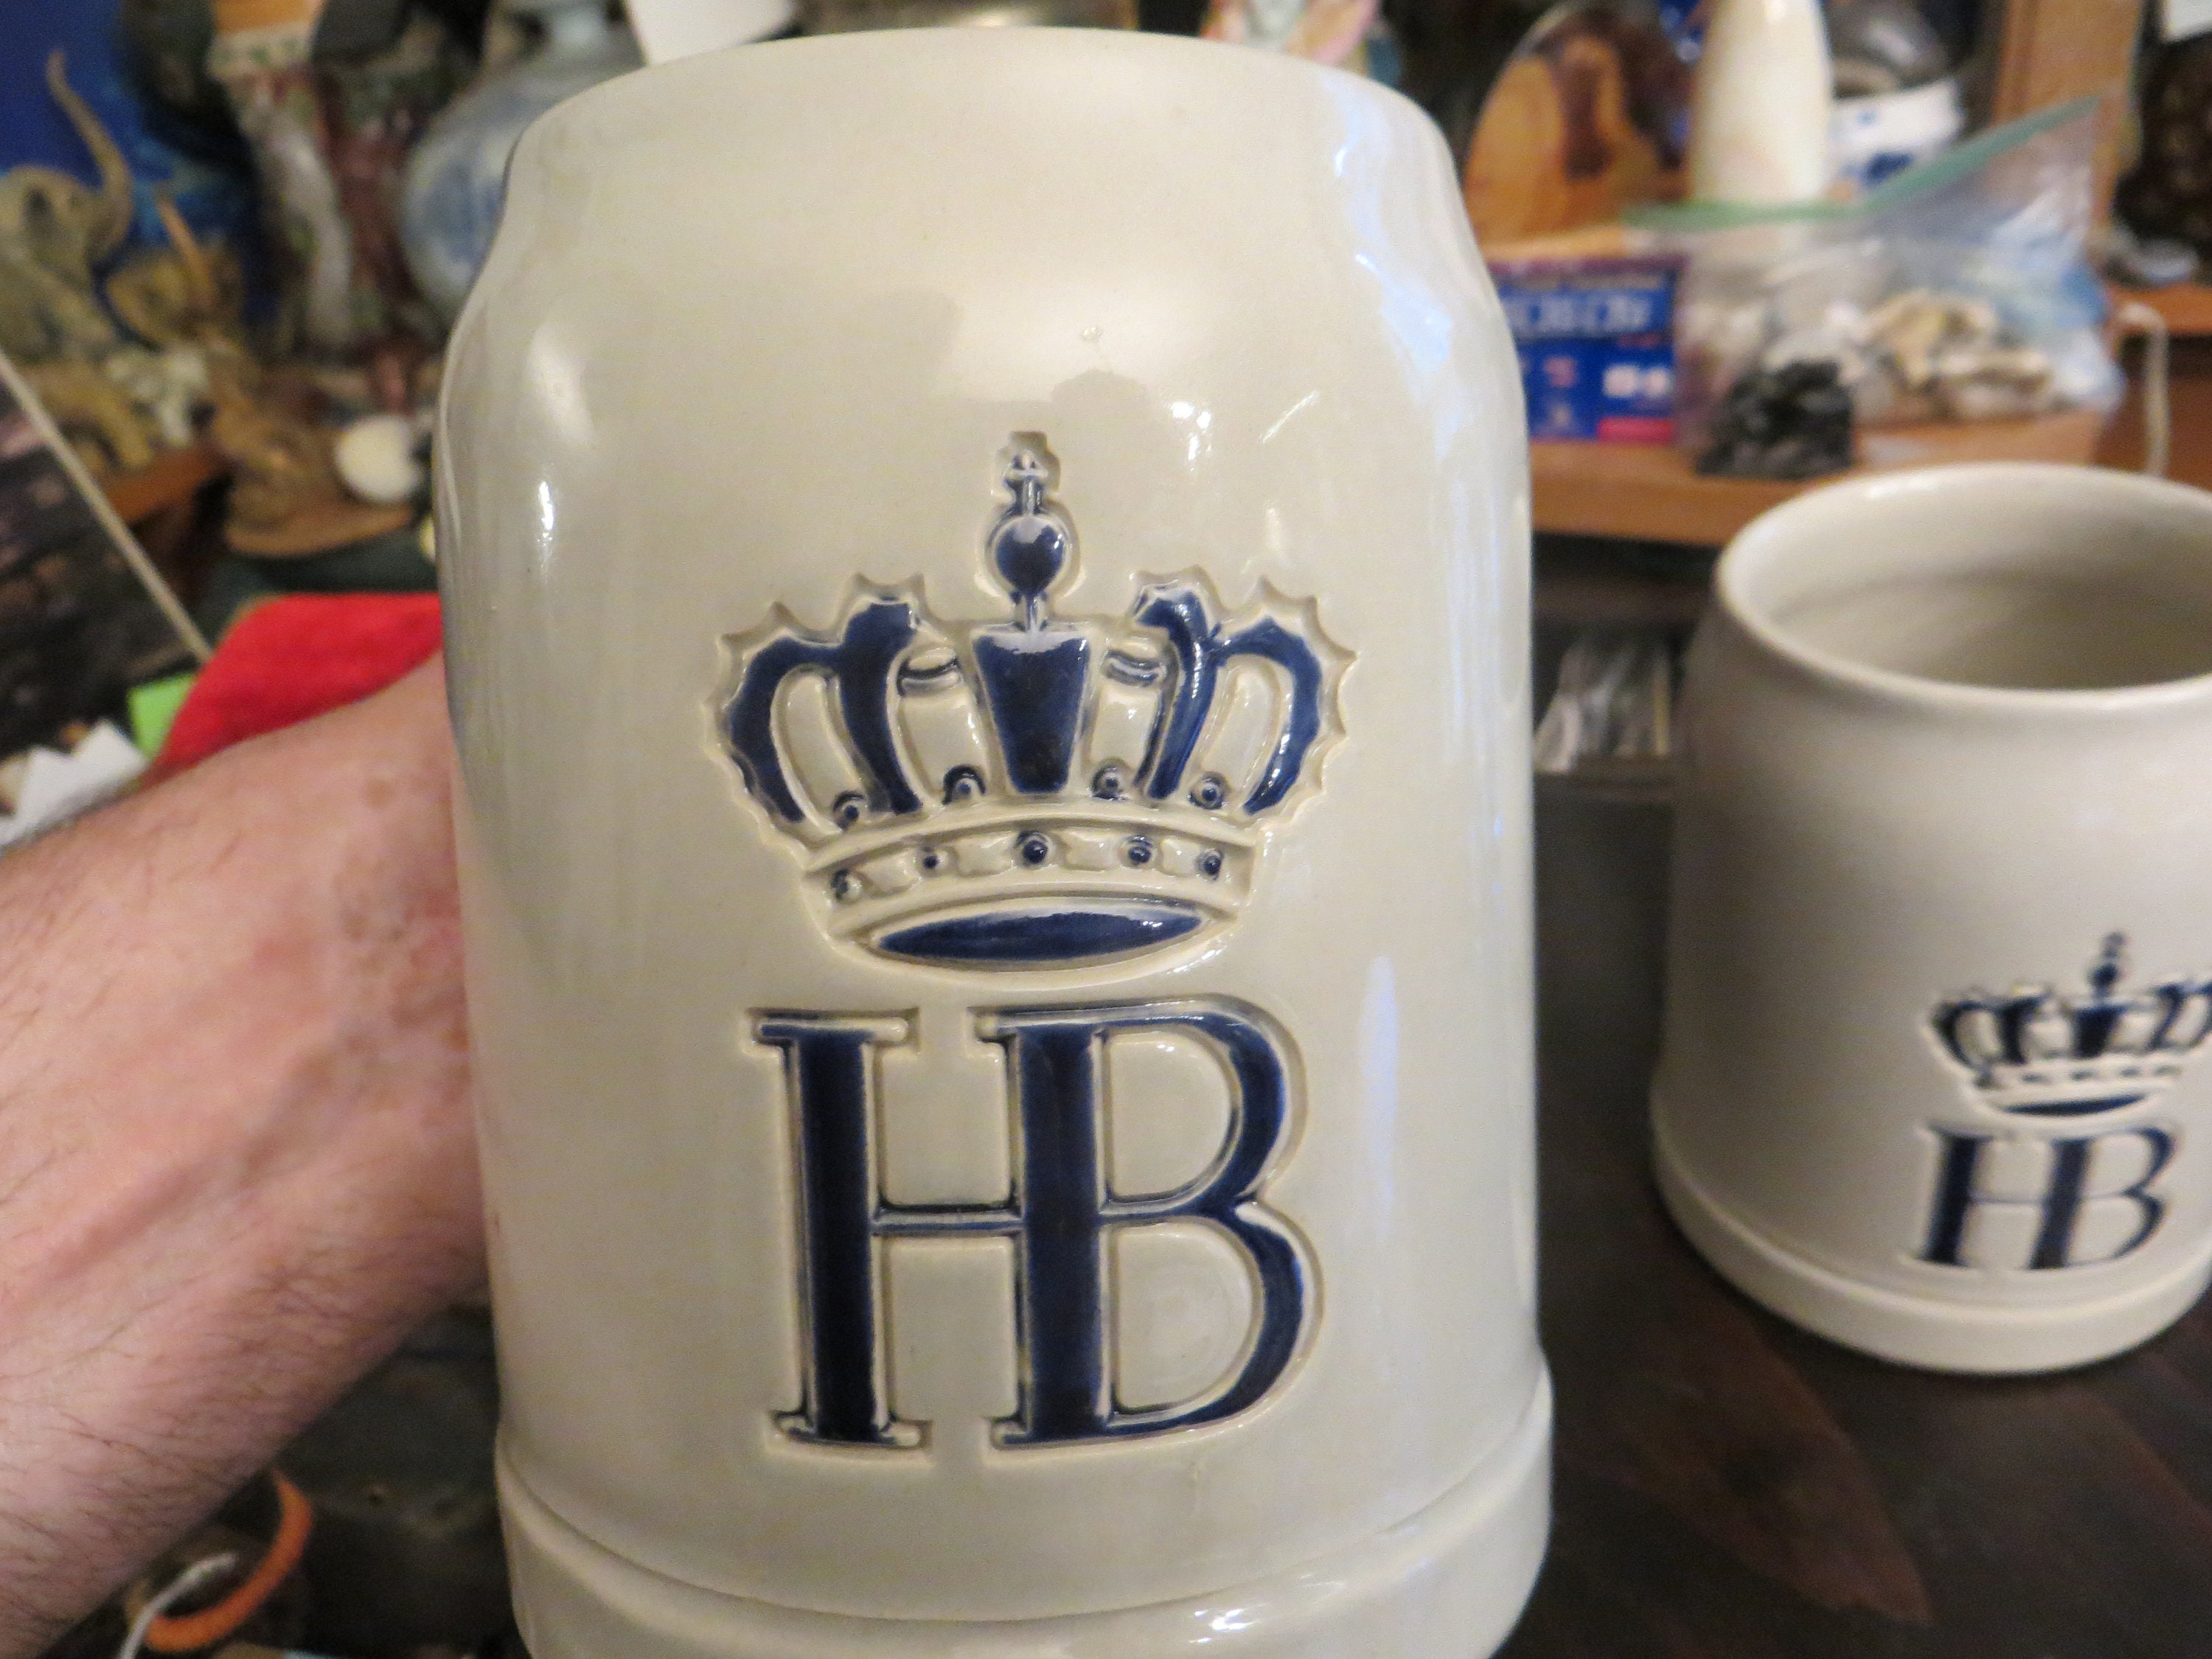 Hofbrauhaus HB 1 Liter Salt Glaze Stoneware Beer Mug 